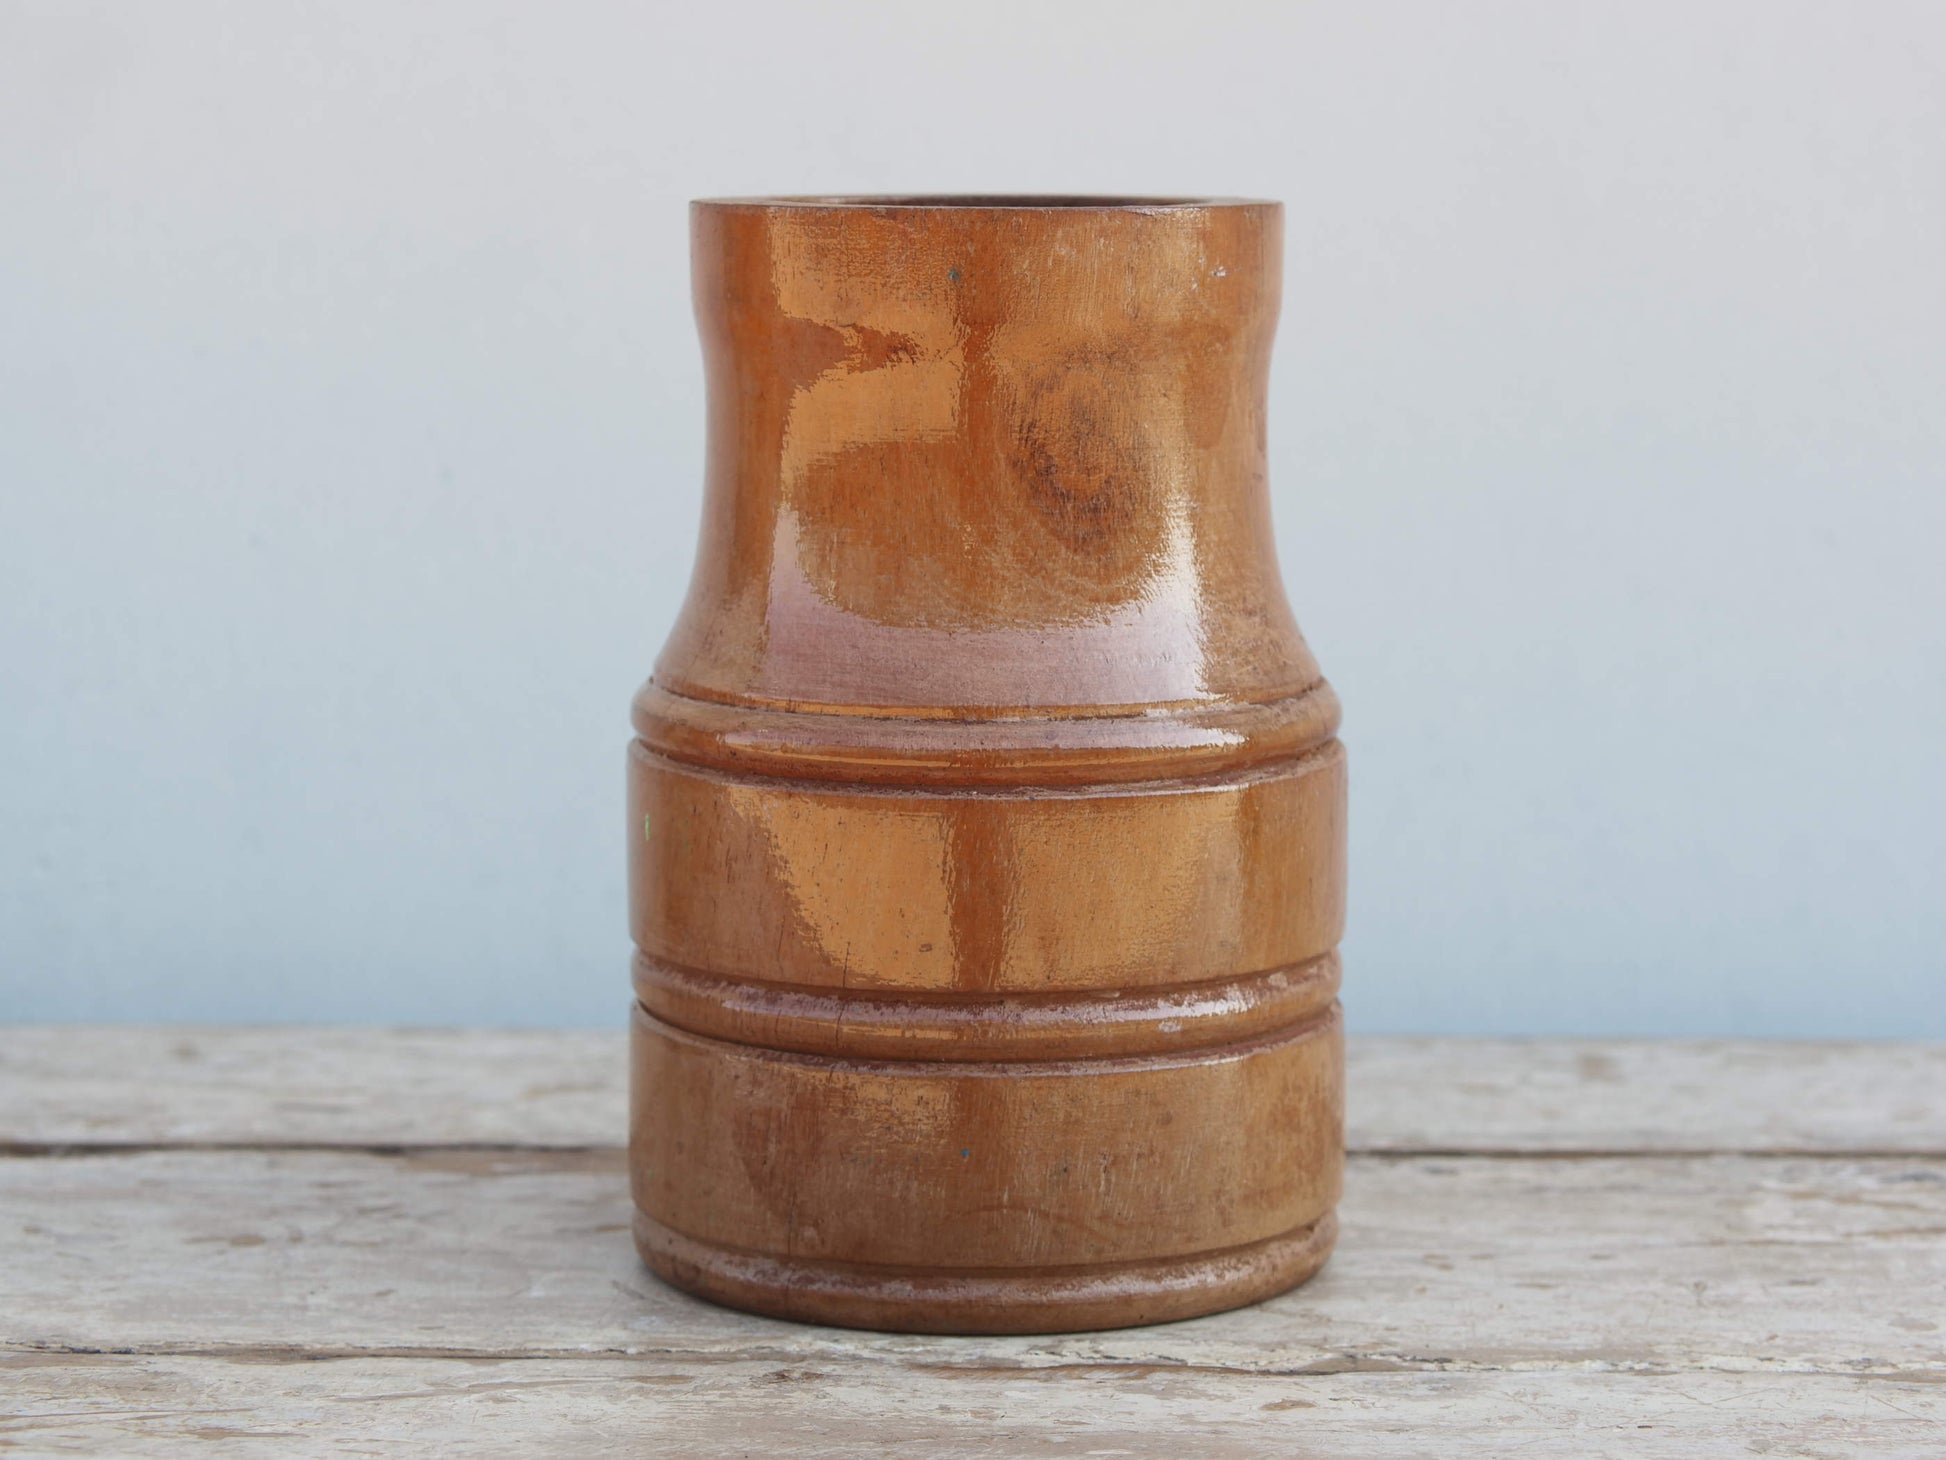 Vaso Indiano in legno, pezzo unico ricavato da un unico tronco di legno. Dimensioni diam 12 h20 cm.  disponibili altri pezzi e colori come da foto.